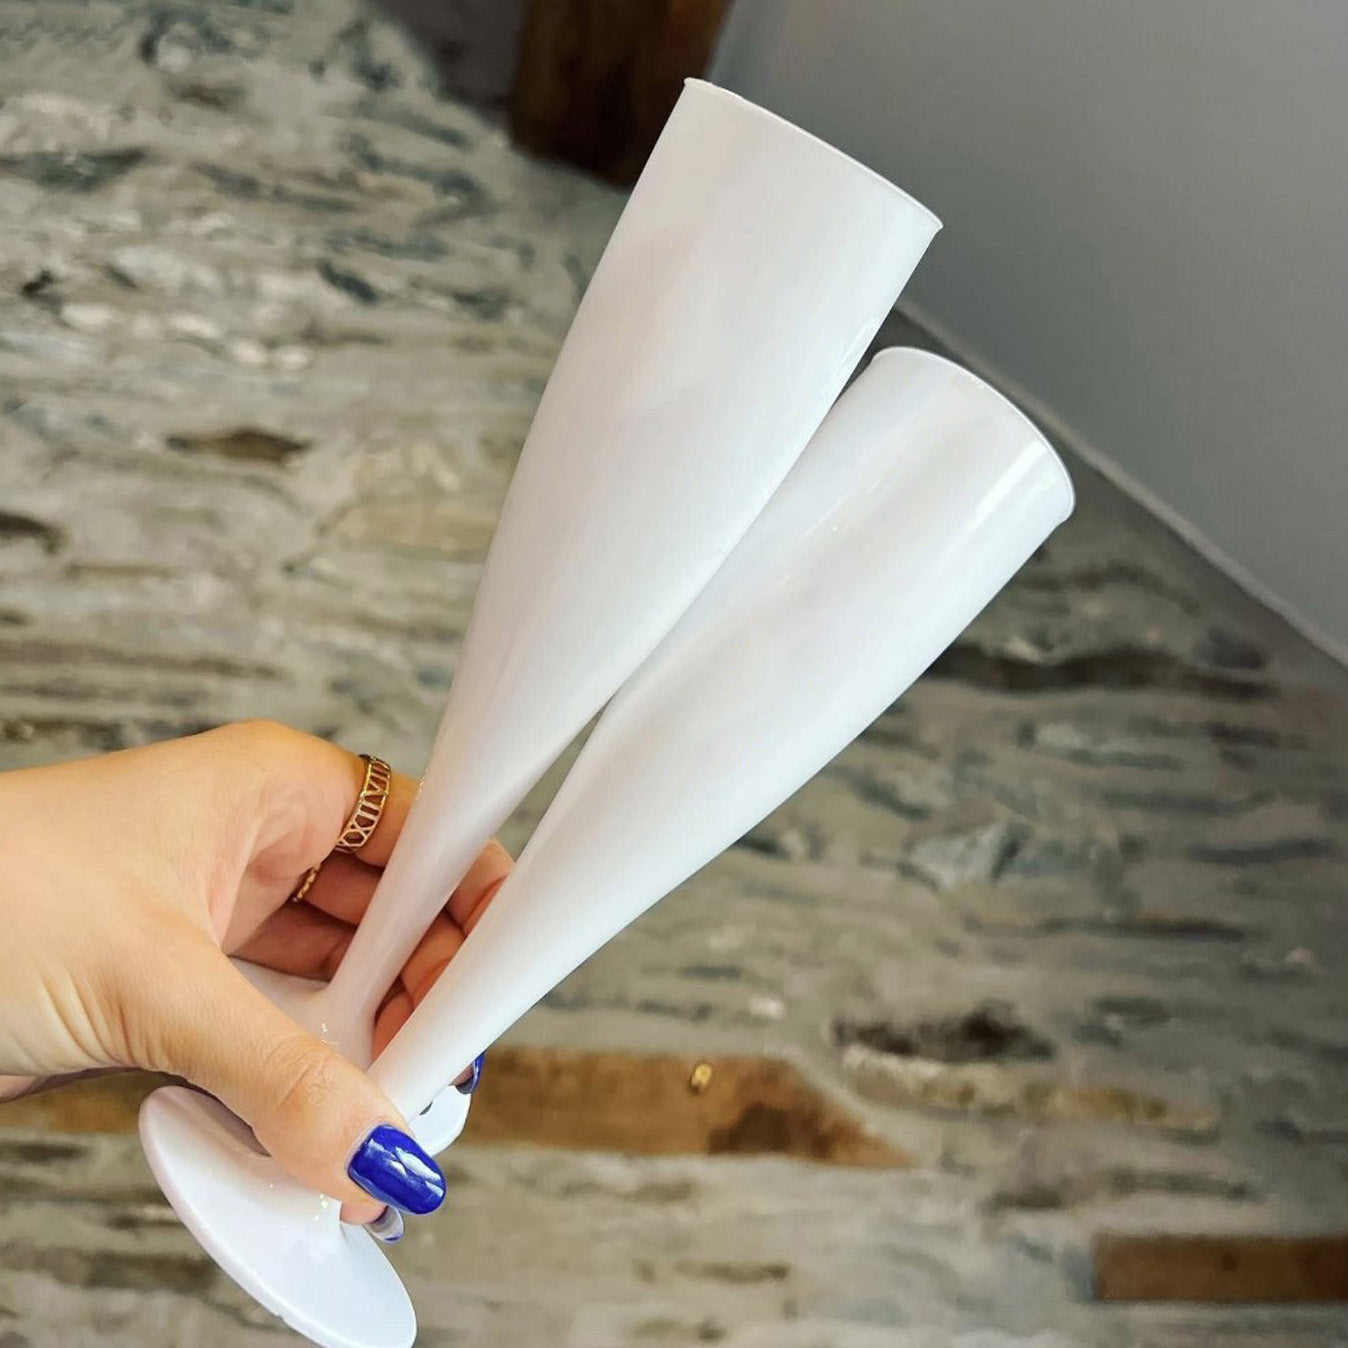 20 x White Disposable Plastic Prosecco Flutes 175ml 6oz